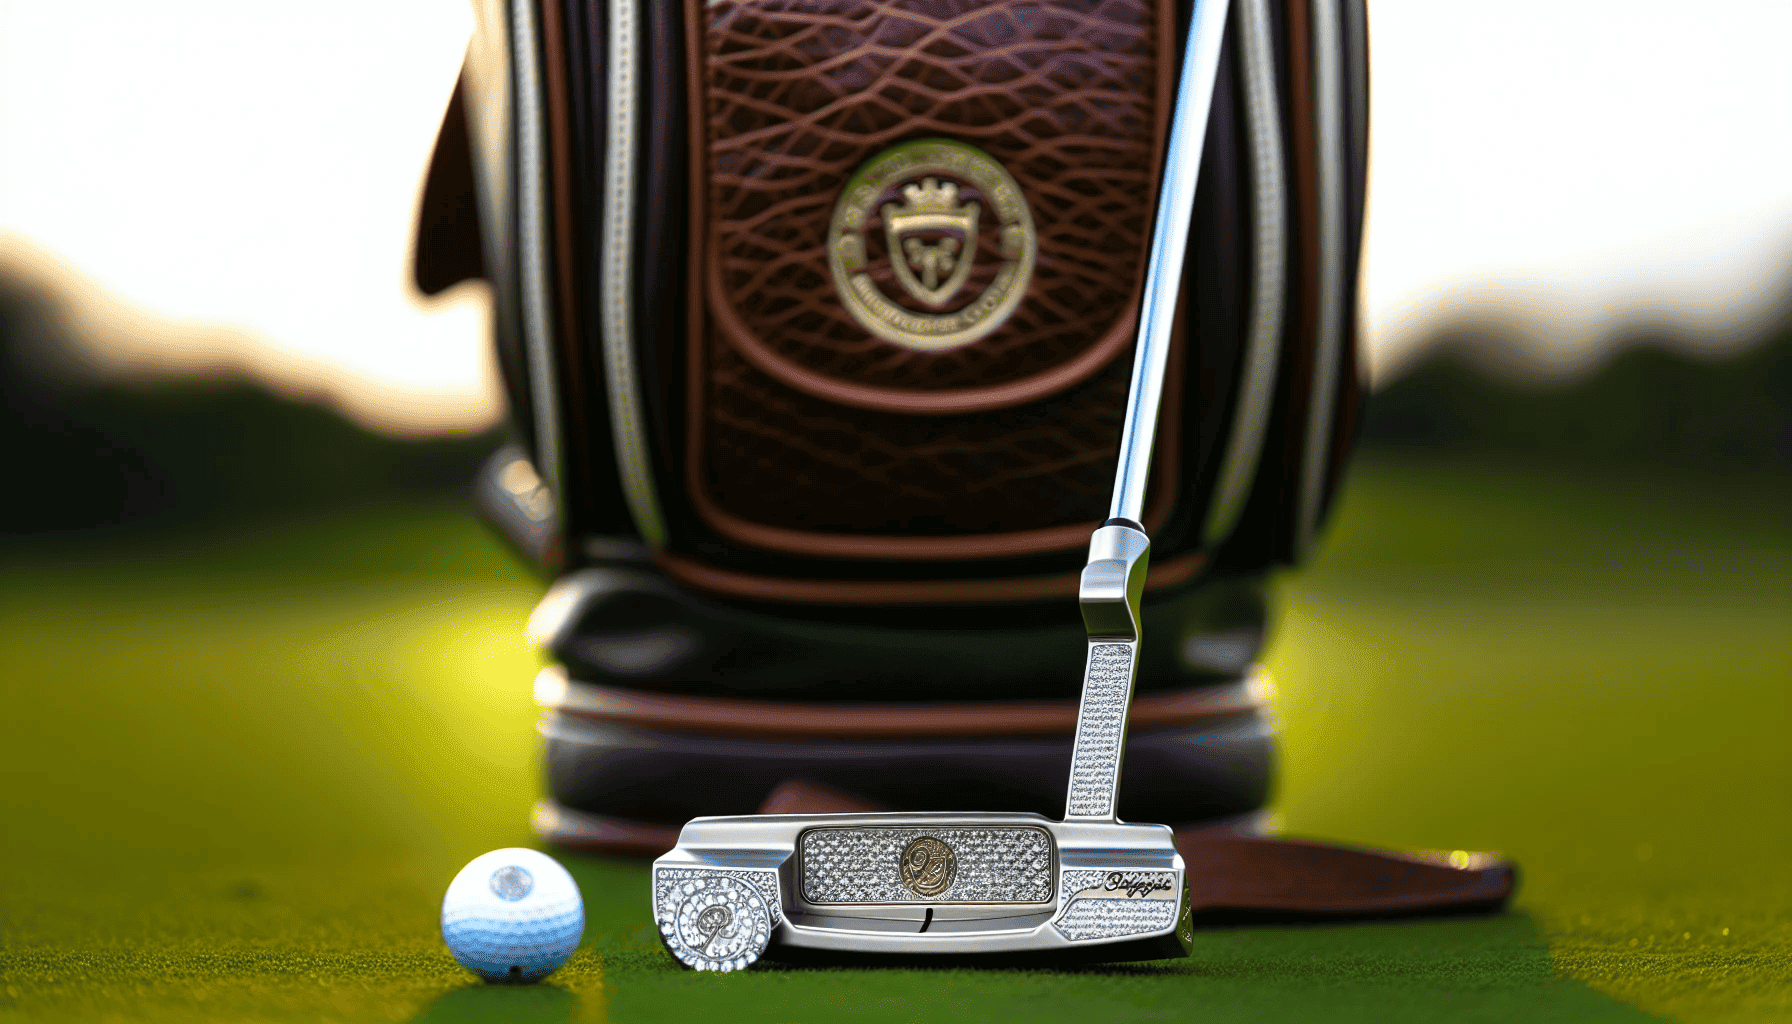 An elegant putter and golf ball marker on a luxurious golf bag